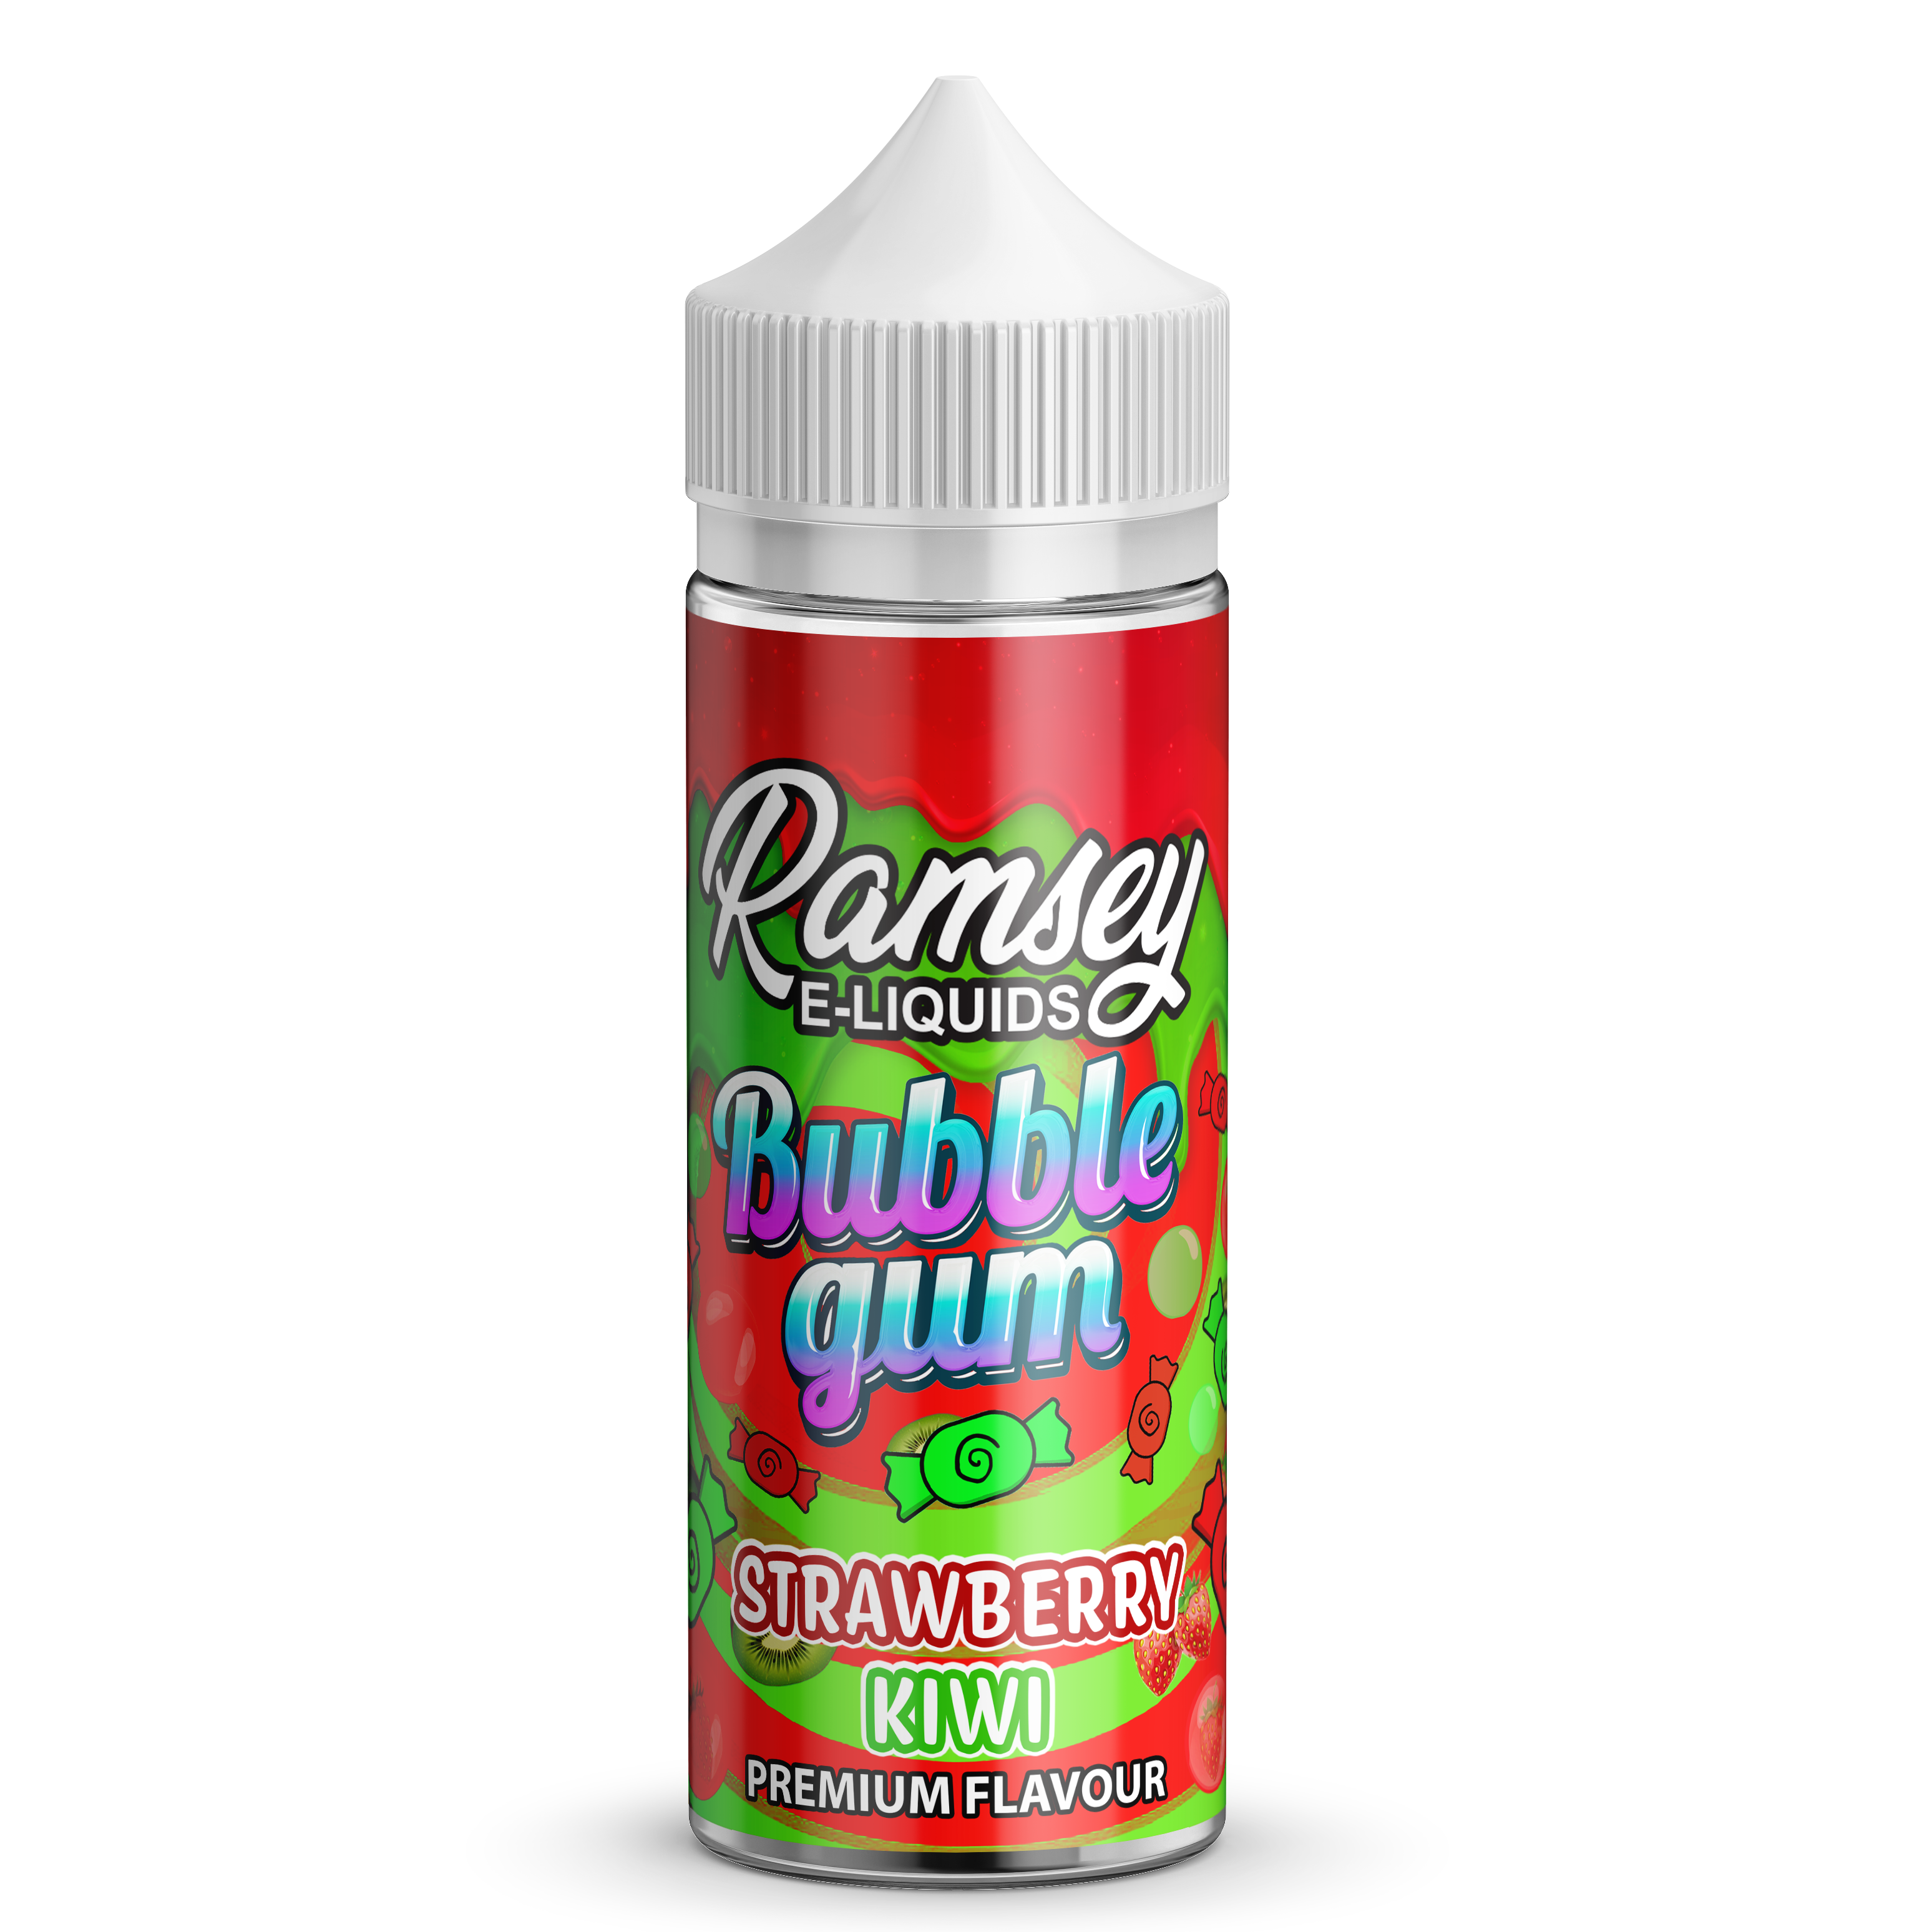 Ramsey E-Liquids Bubblegum Range Shortfill E-Liquid